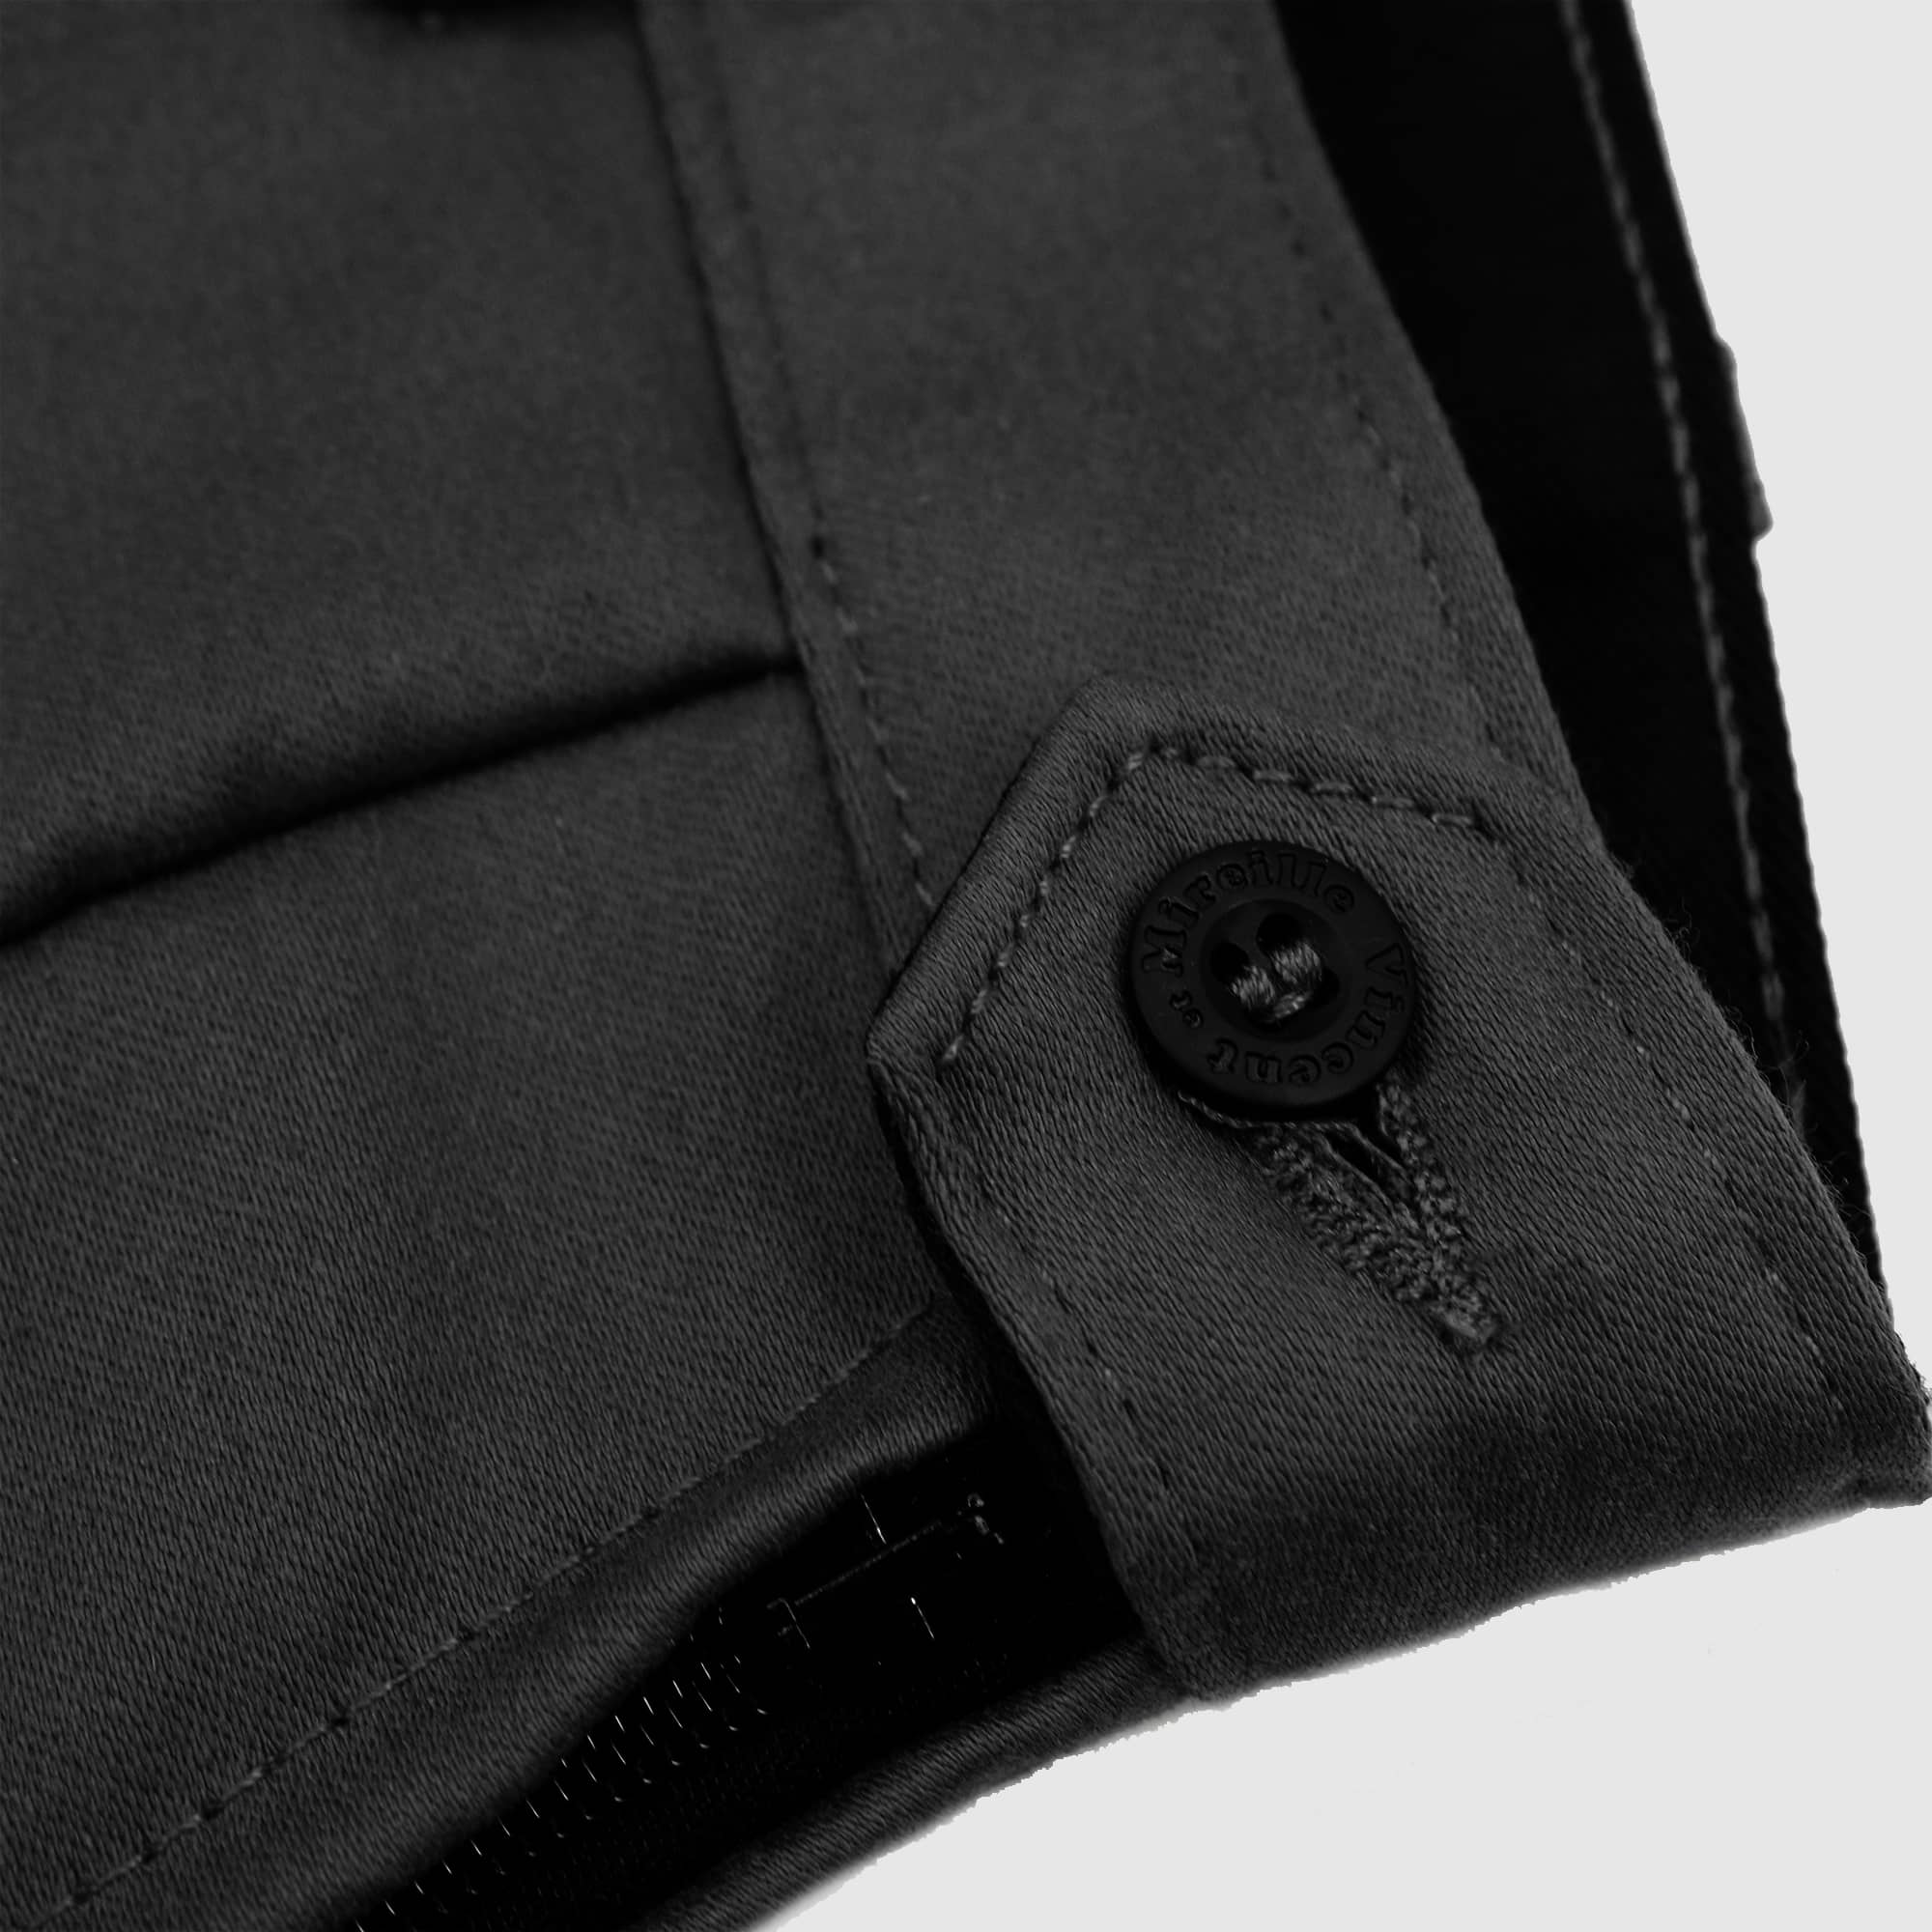 Fermeture bouton de la jupe culotte noire